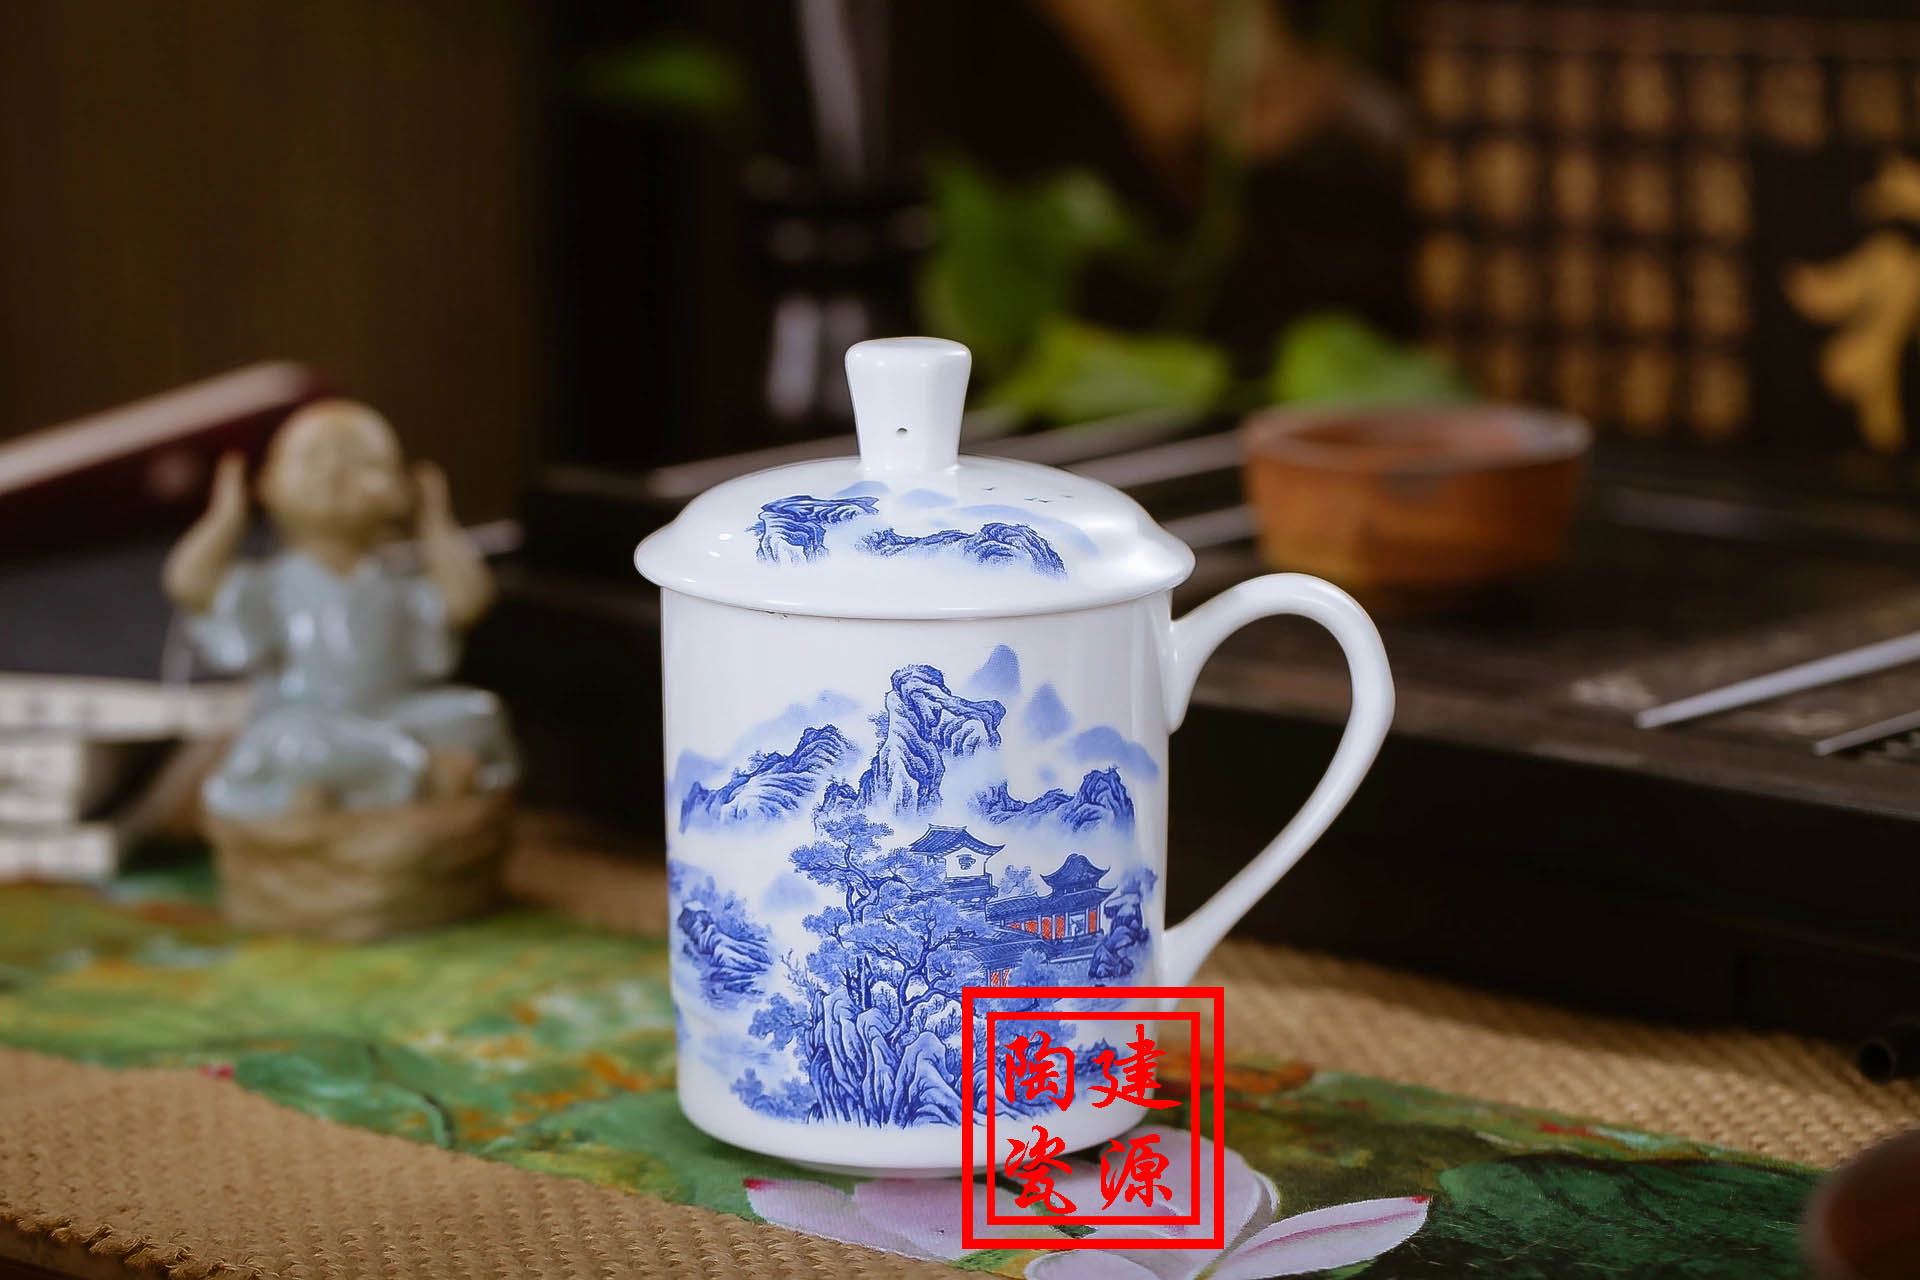 会议室用陶瓷杯具批发 公司企业定制陶瓷杯价格 景德镇茶杯厂家